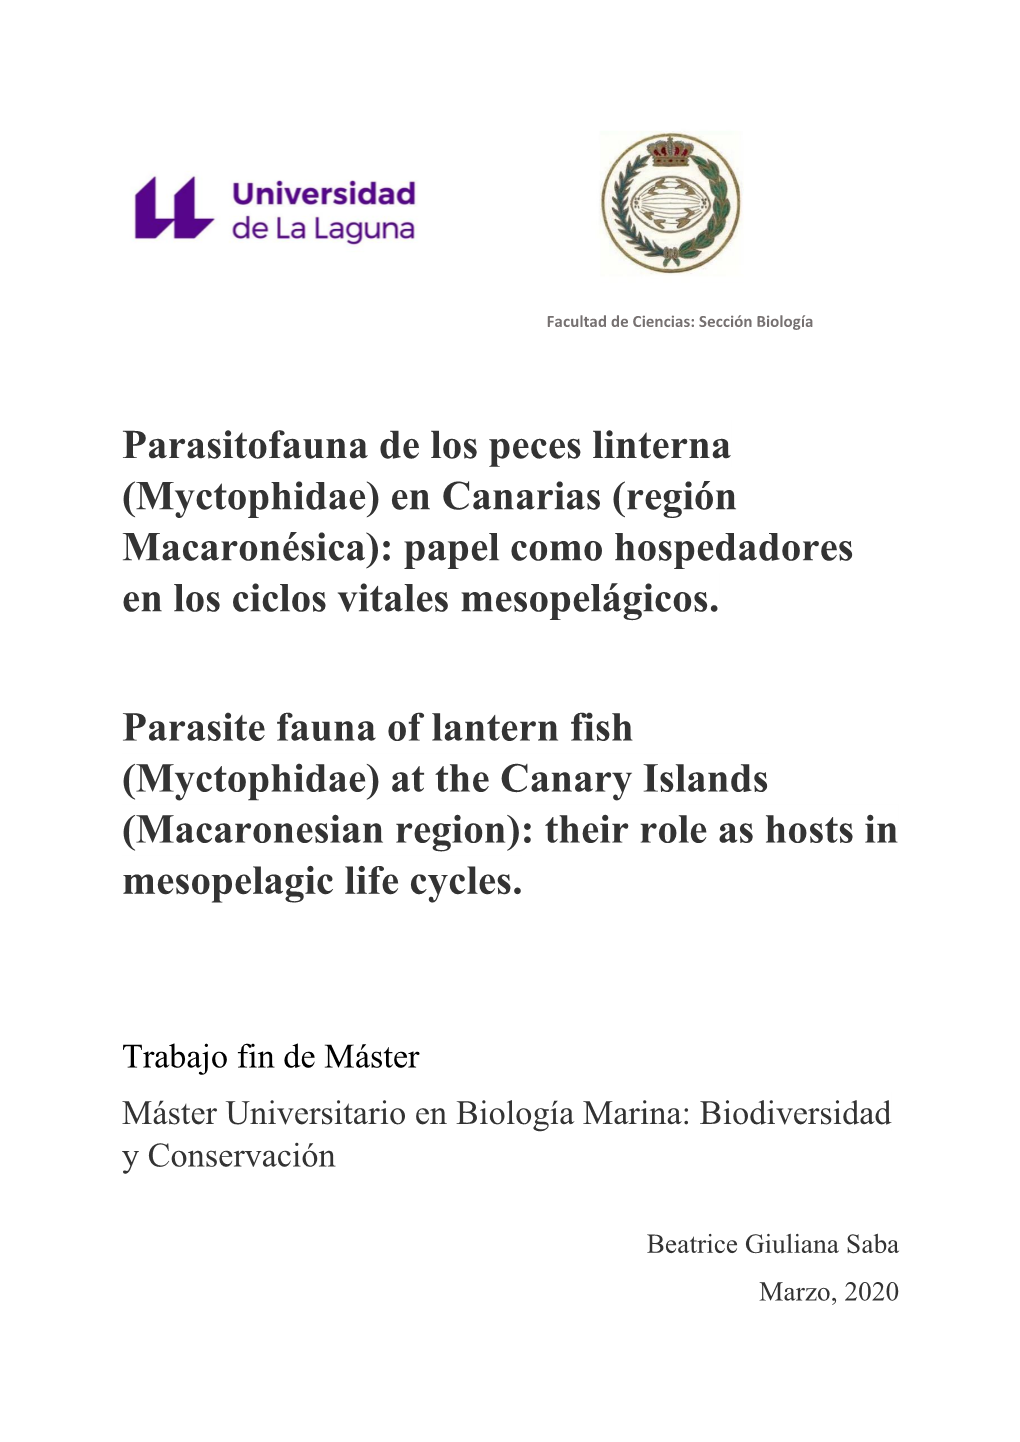 Parasitofauna De Los Peces Linterna (Myctophidae) En Canarias (Región Macaronésica): Papel Como Hospedadores En Los Ciclos Vitales Mesopelágicos